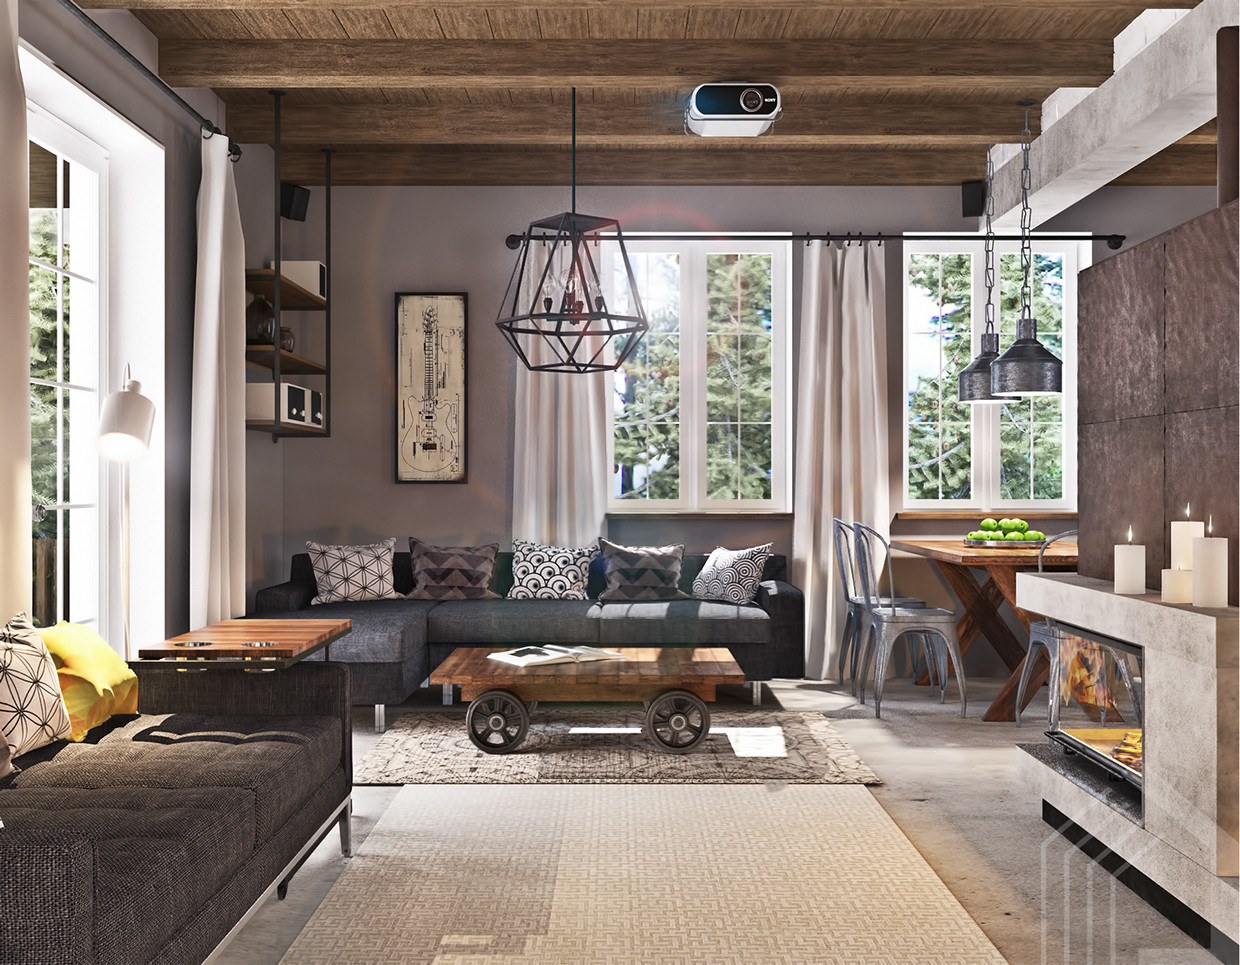 Studio Apartment Living Room Ideas
 Studio Apartment Design With Industrial Decor Looks So